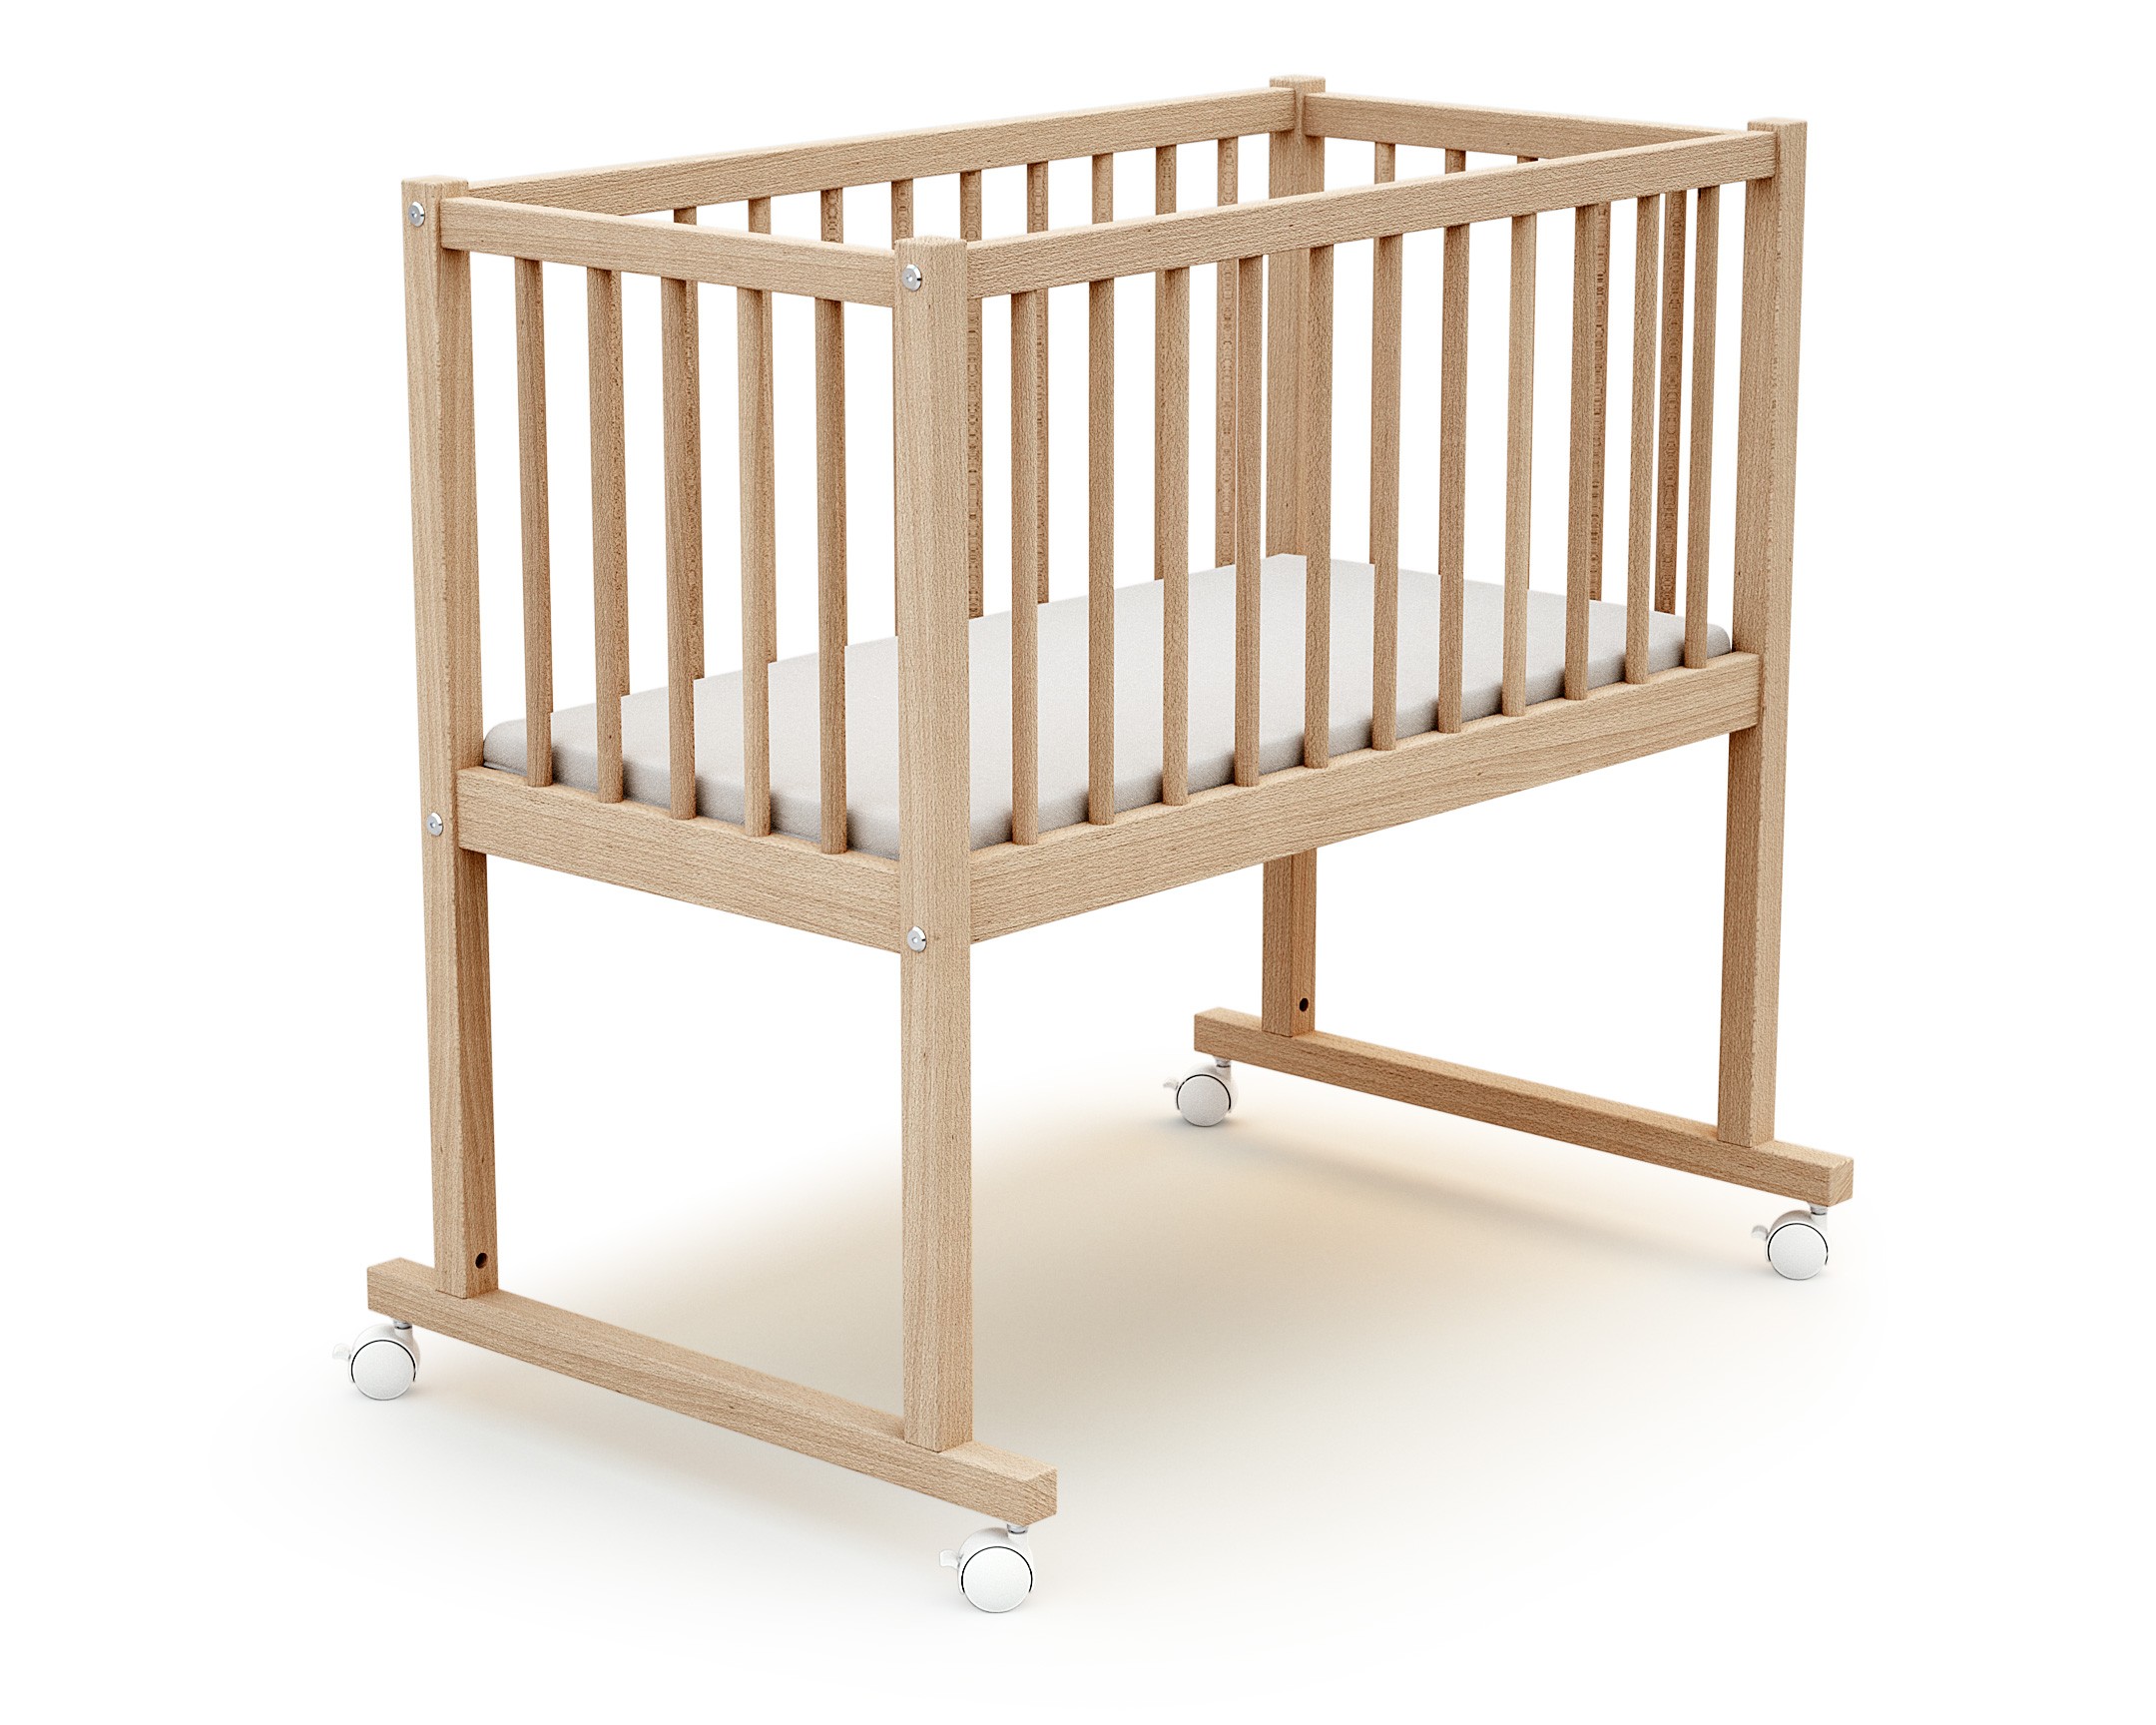 Quel linge de lit pour bébé selon son âge ?, Autour de bébé